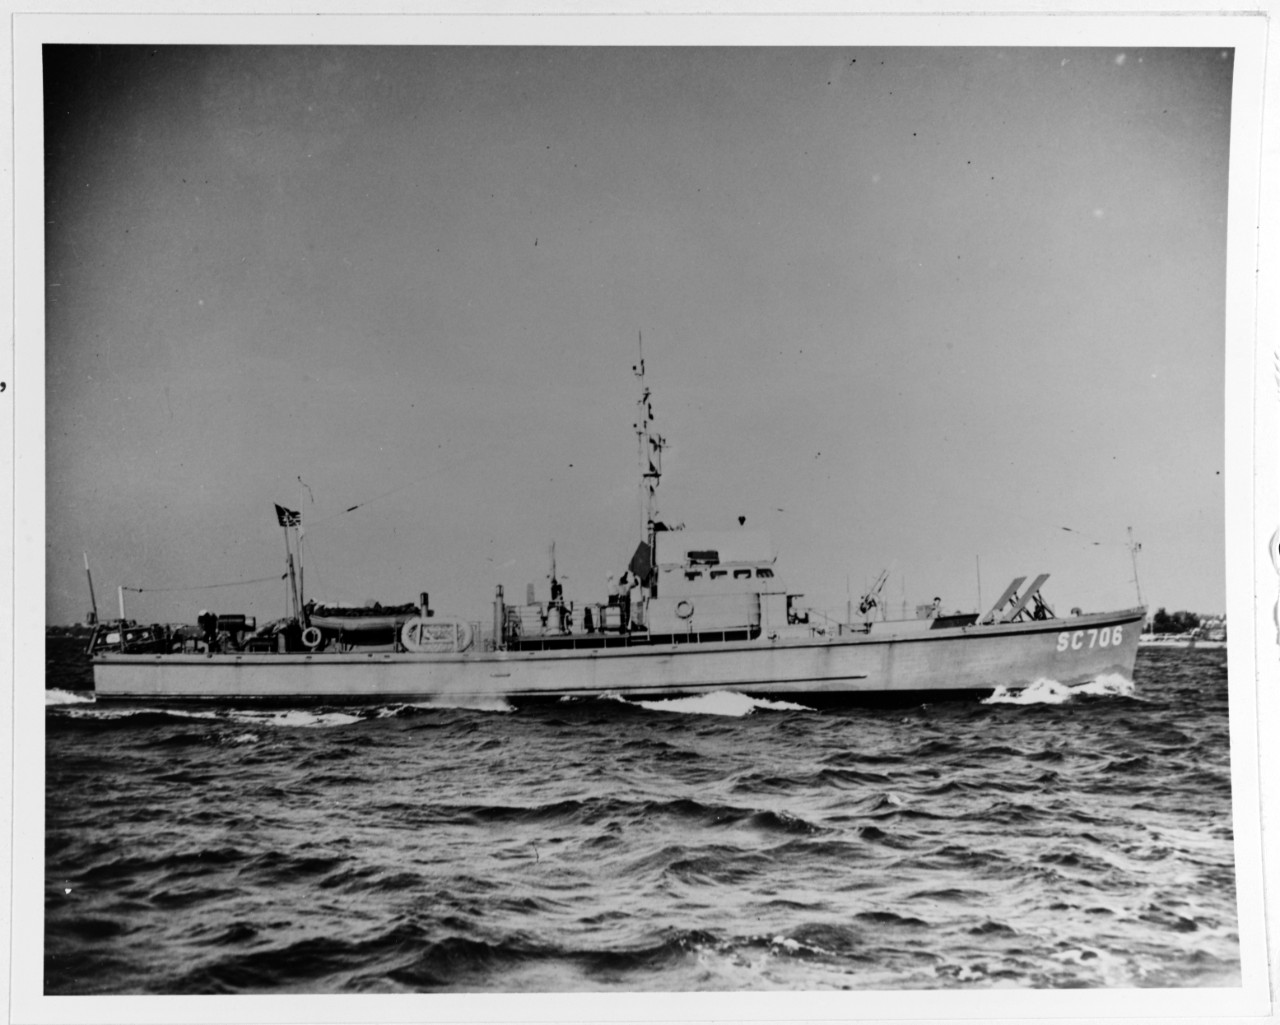 USS SC-706